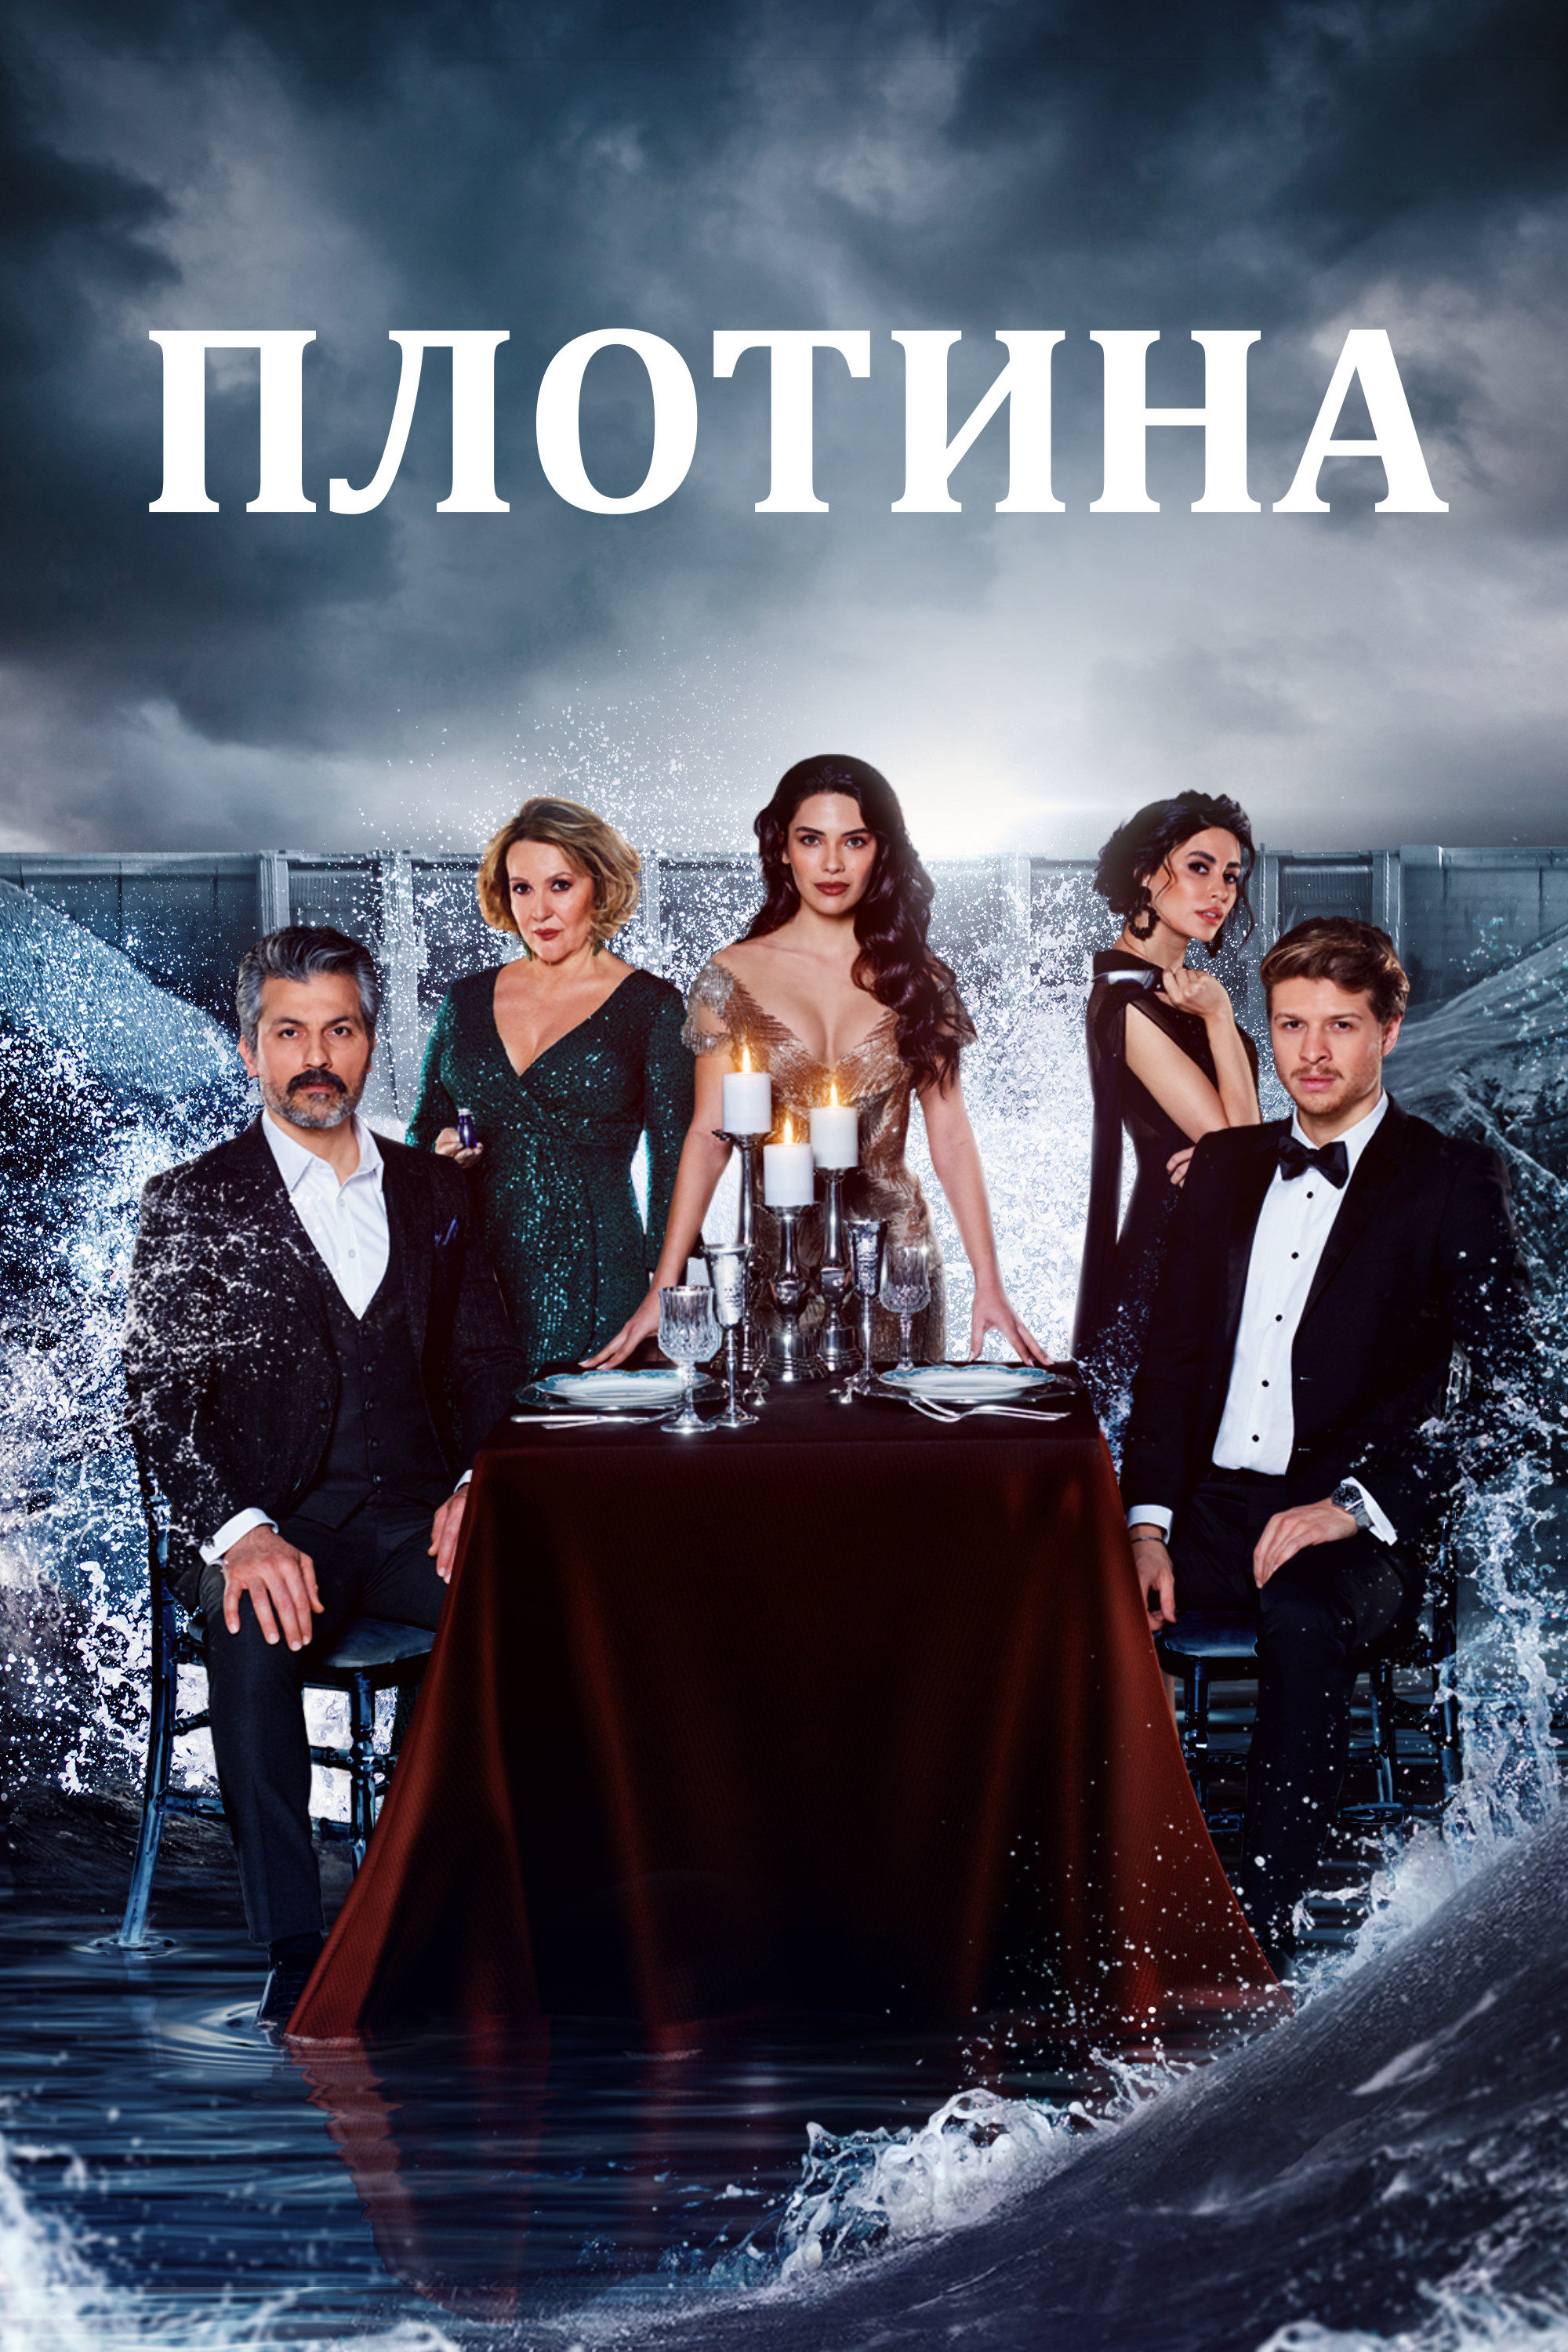 Табу сериал смотреть онлайн на русском